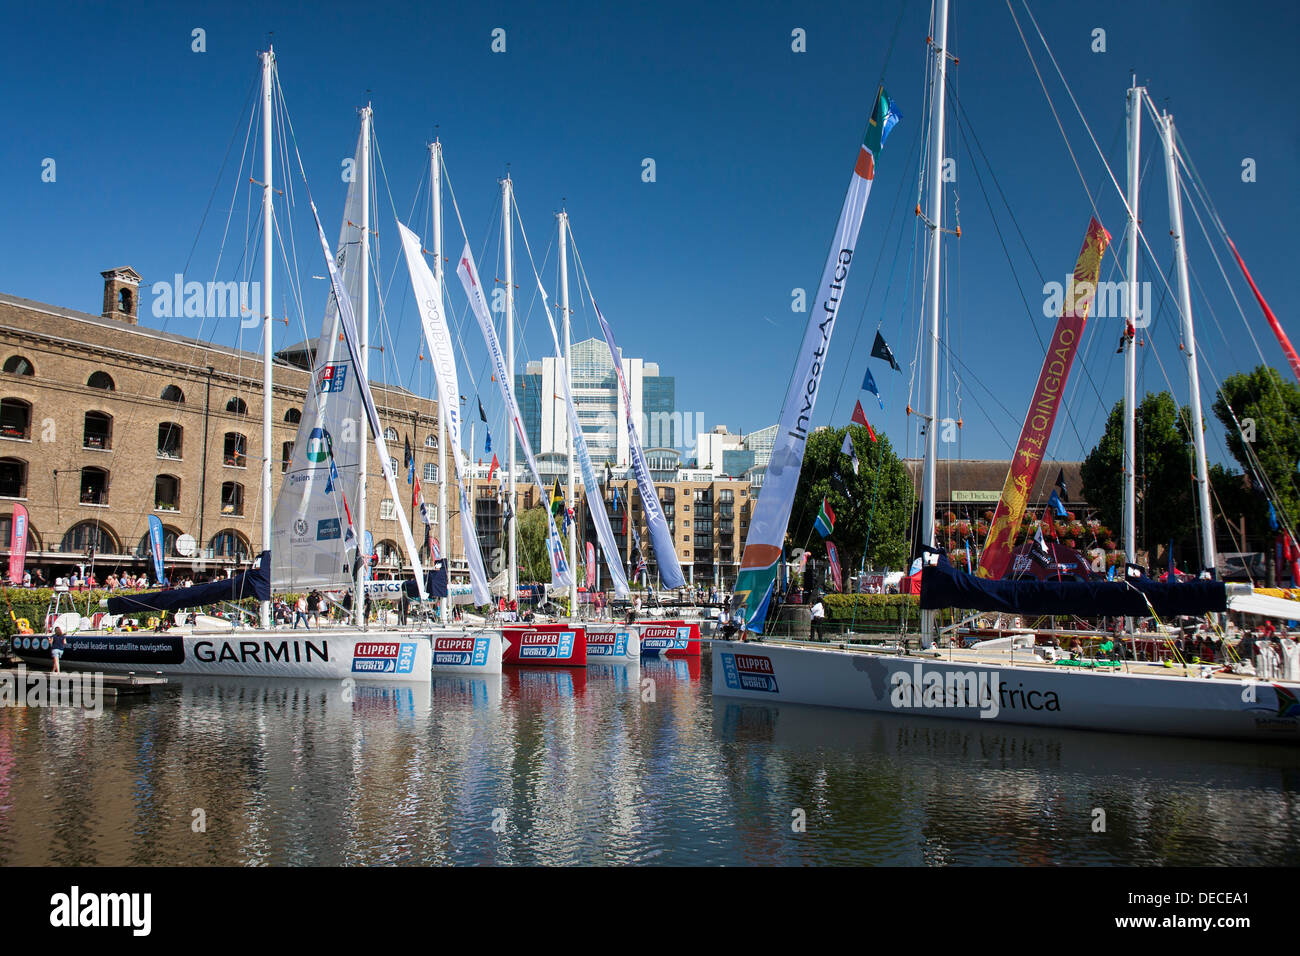 Le Clipper Round the World Race flotte à St Katharine Docks, Région de Tower Hamlets, Londres, Angleterre, Royaume-Uni Banque D'Images